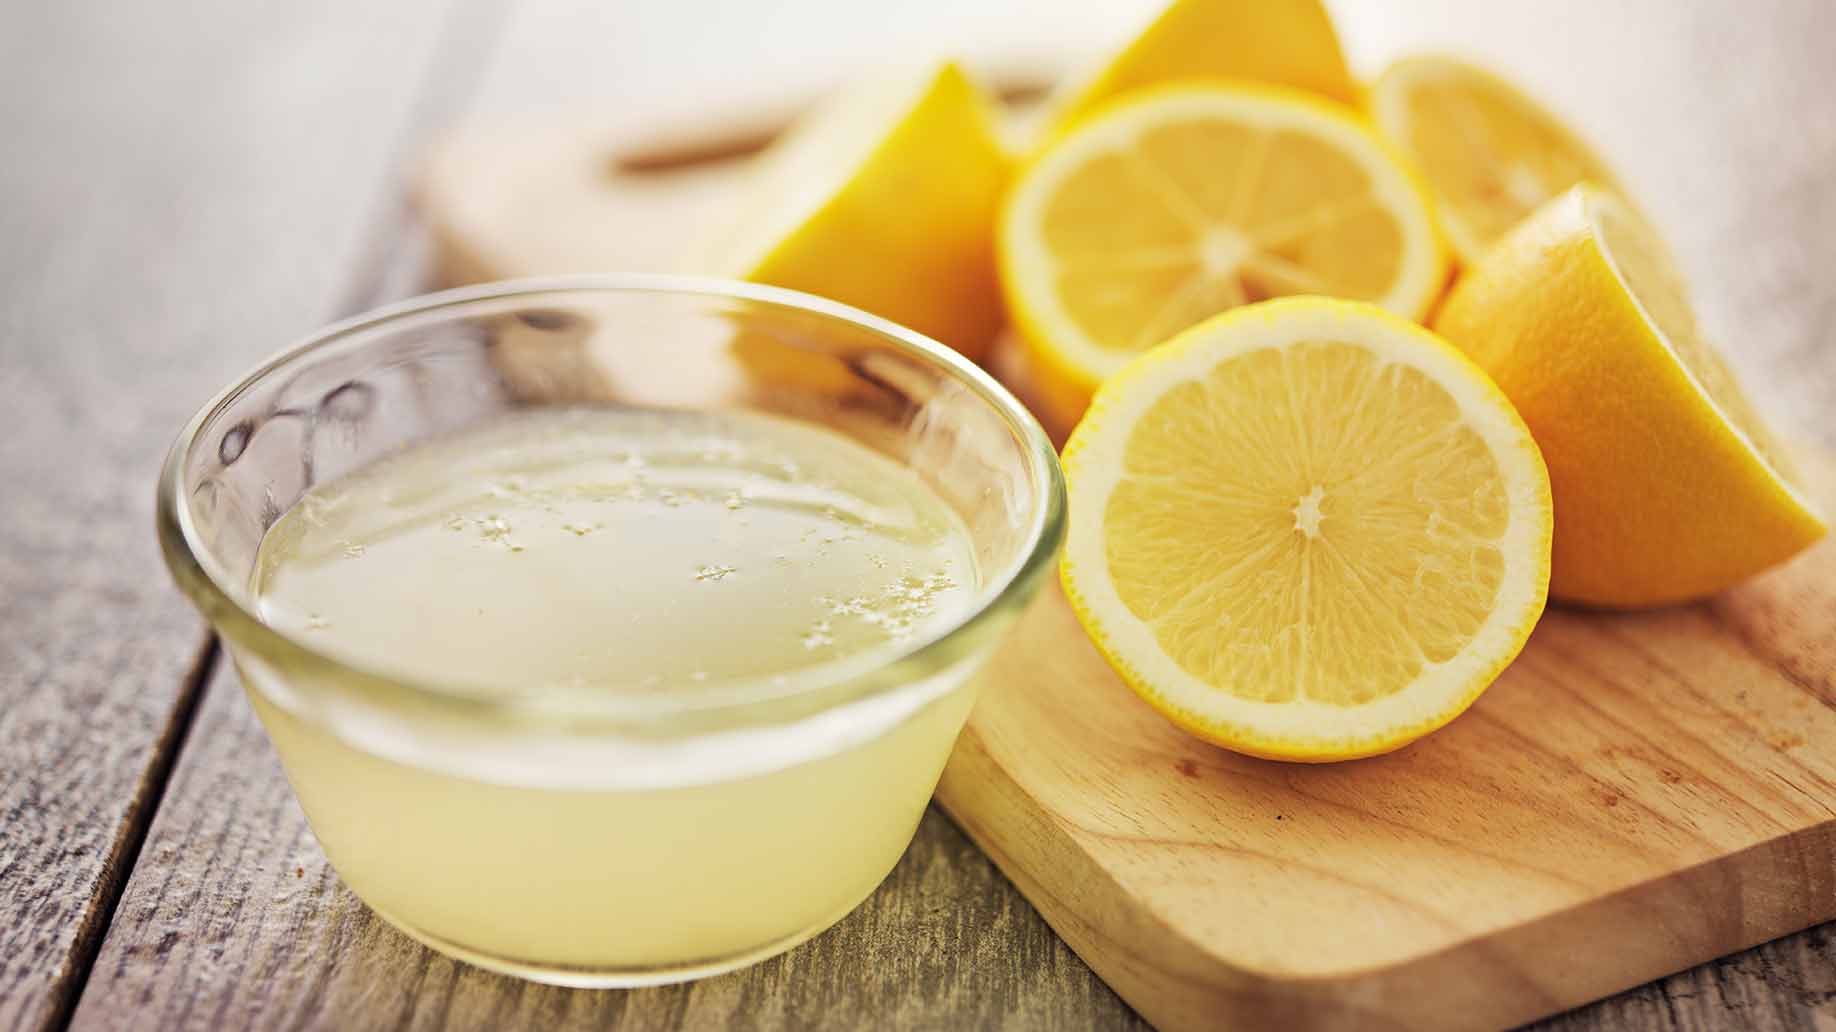 Le citron est très utile pour nettoyer votre maison.